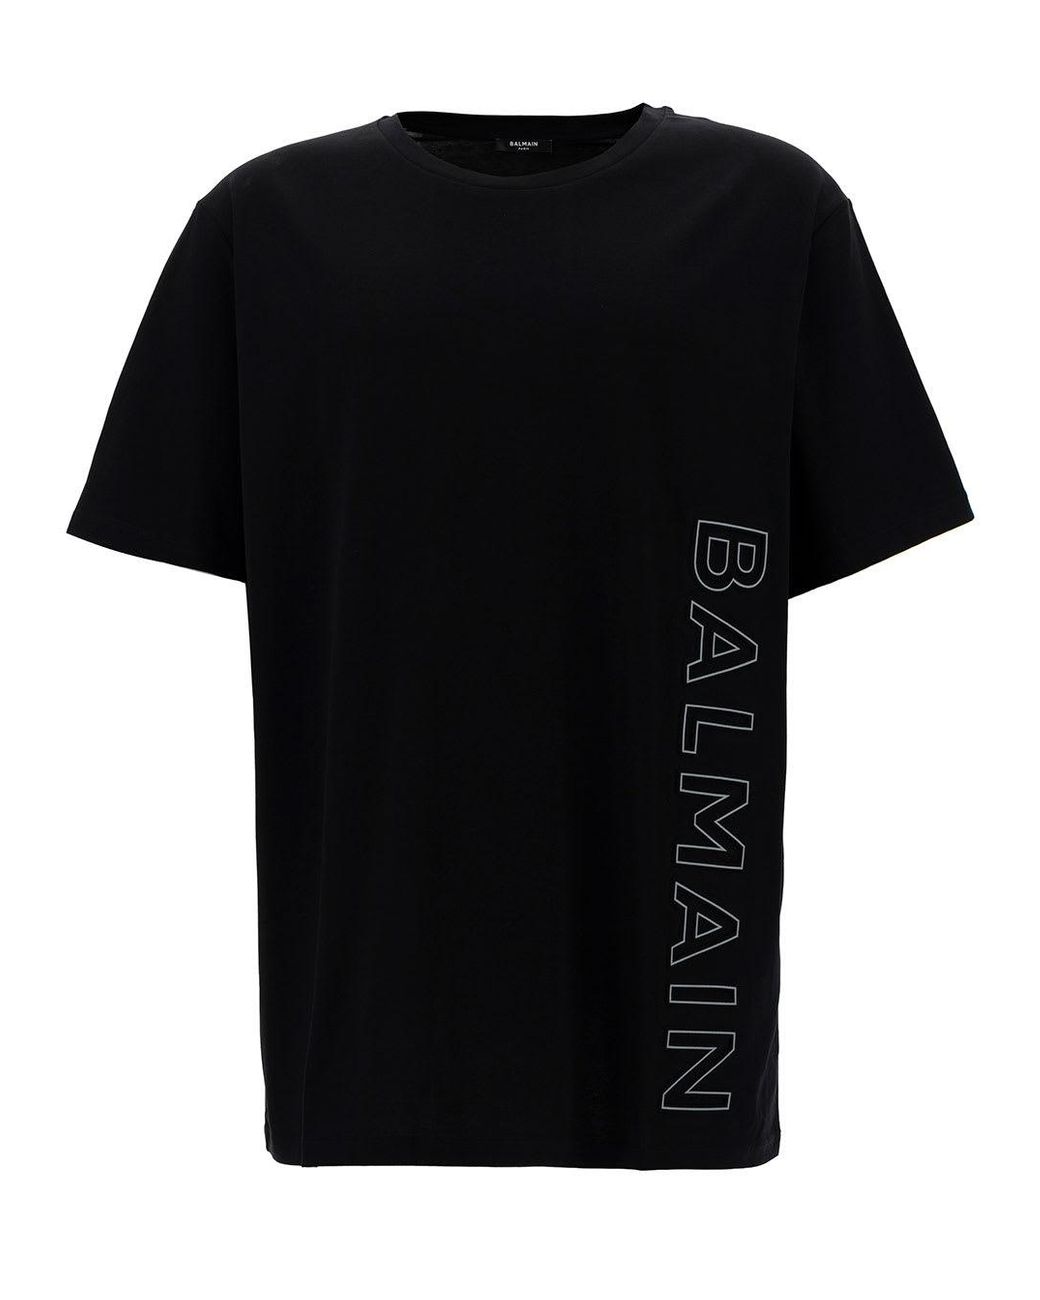 Balmain All Over Flock Logo Monogram Print Black T-shirt - T